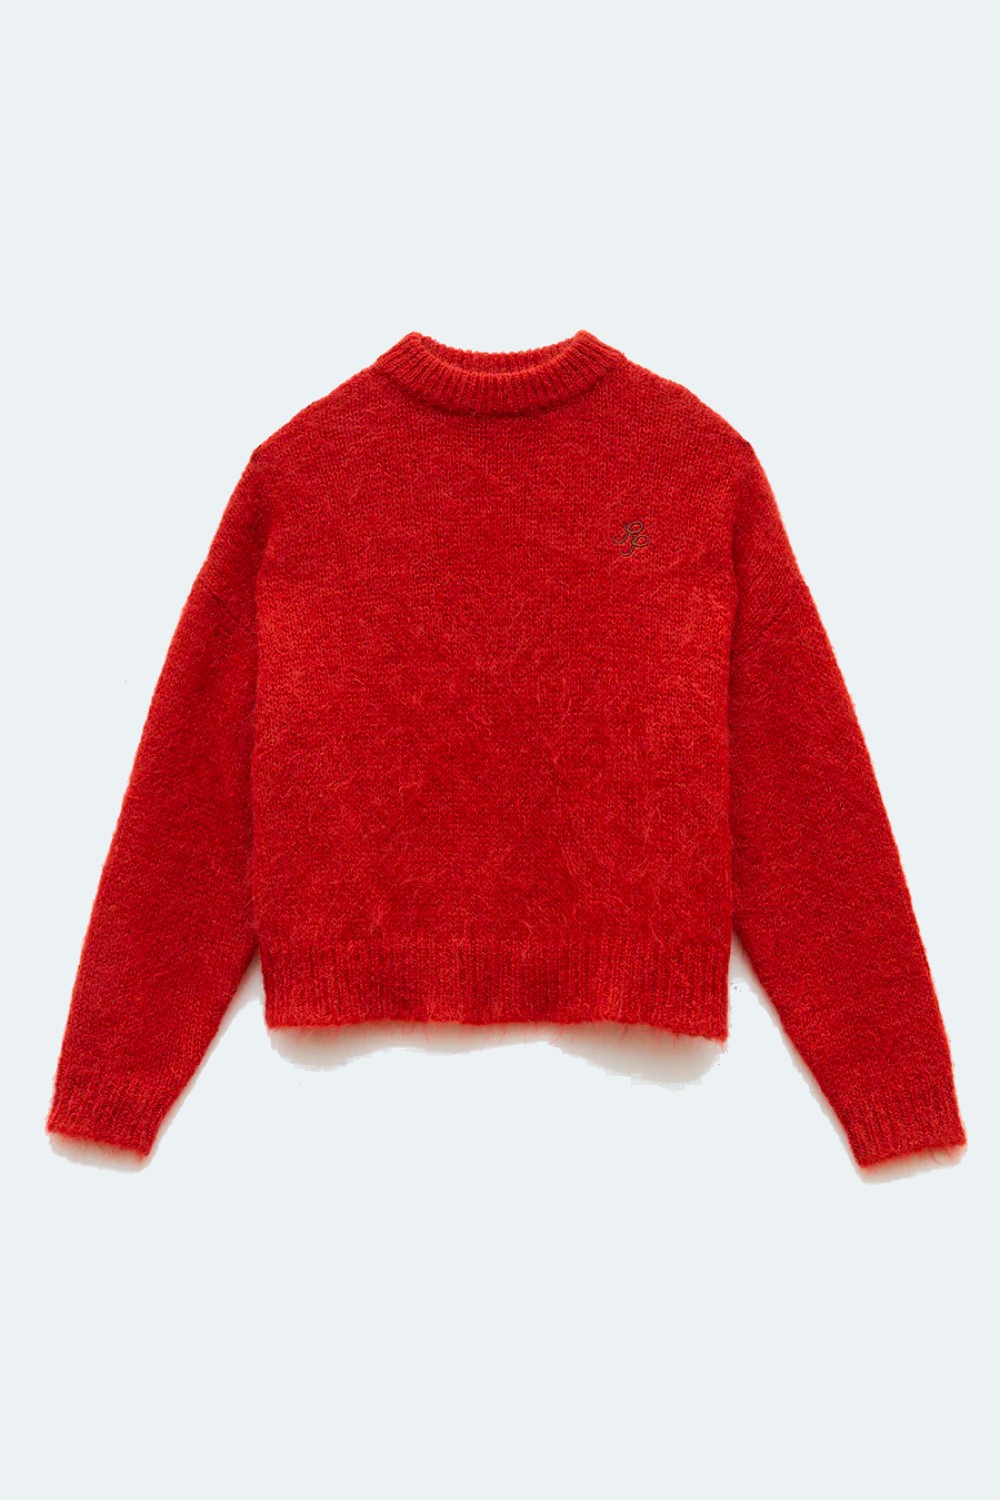 Rejina-Pyo-Sweater